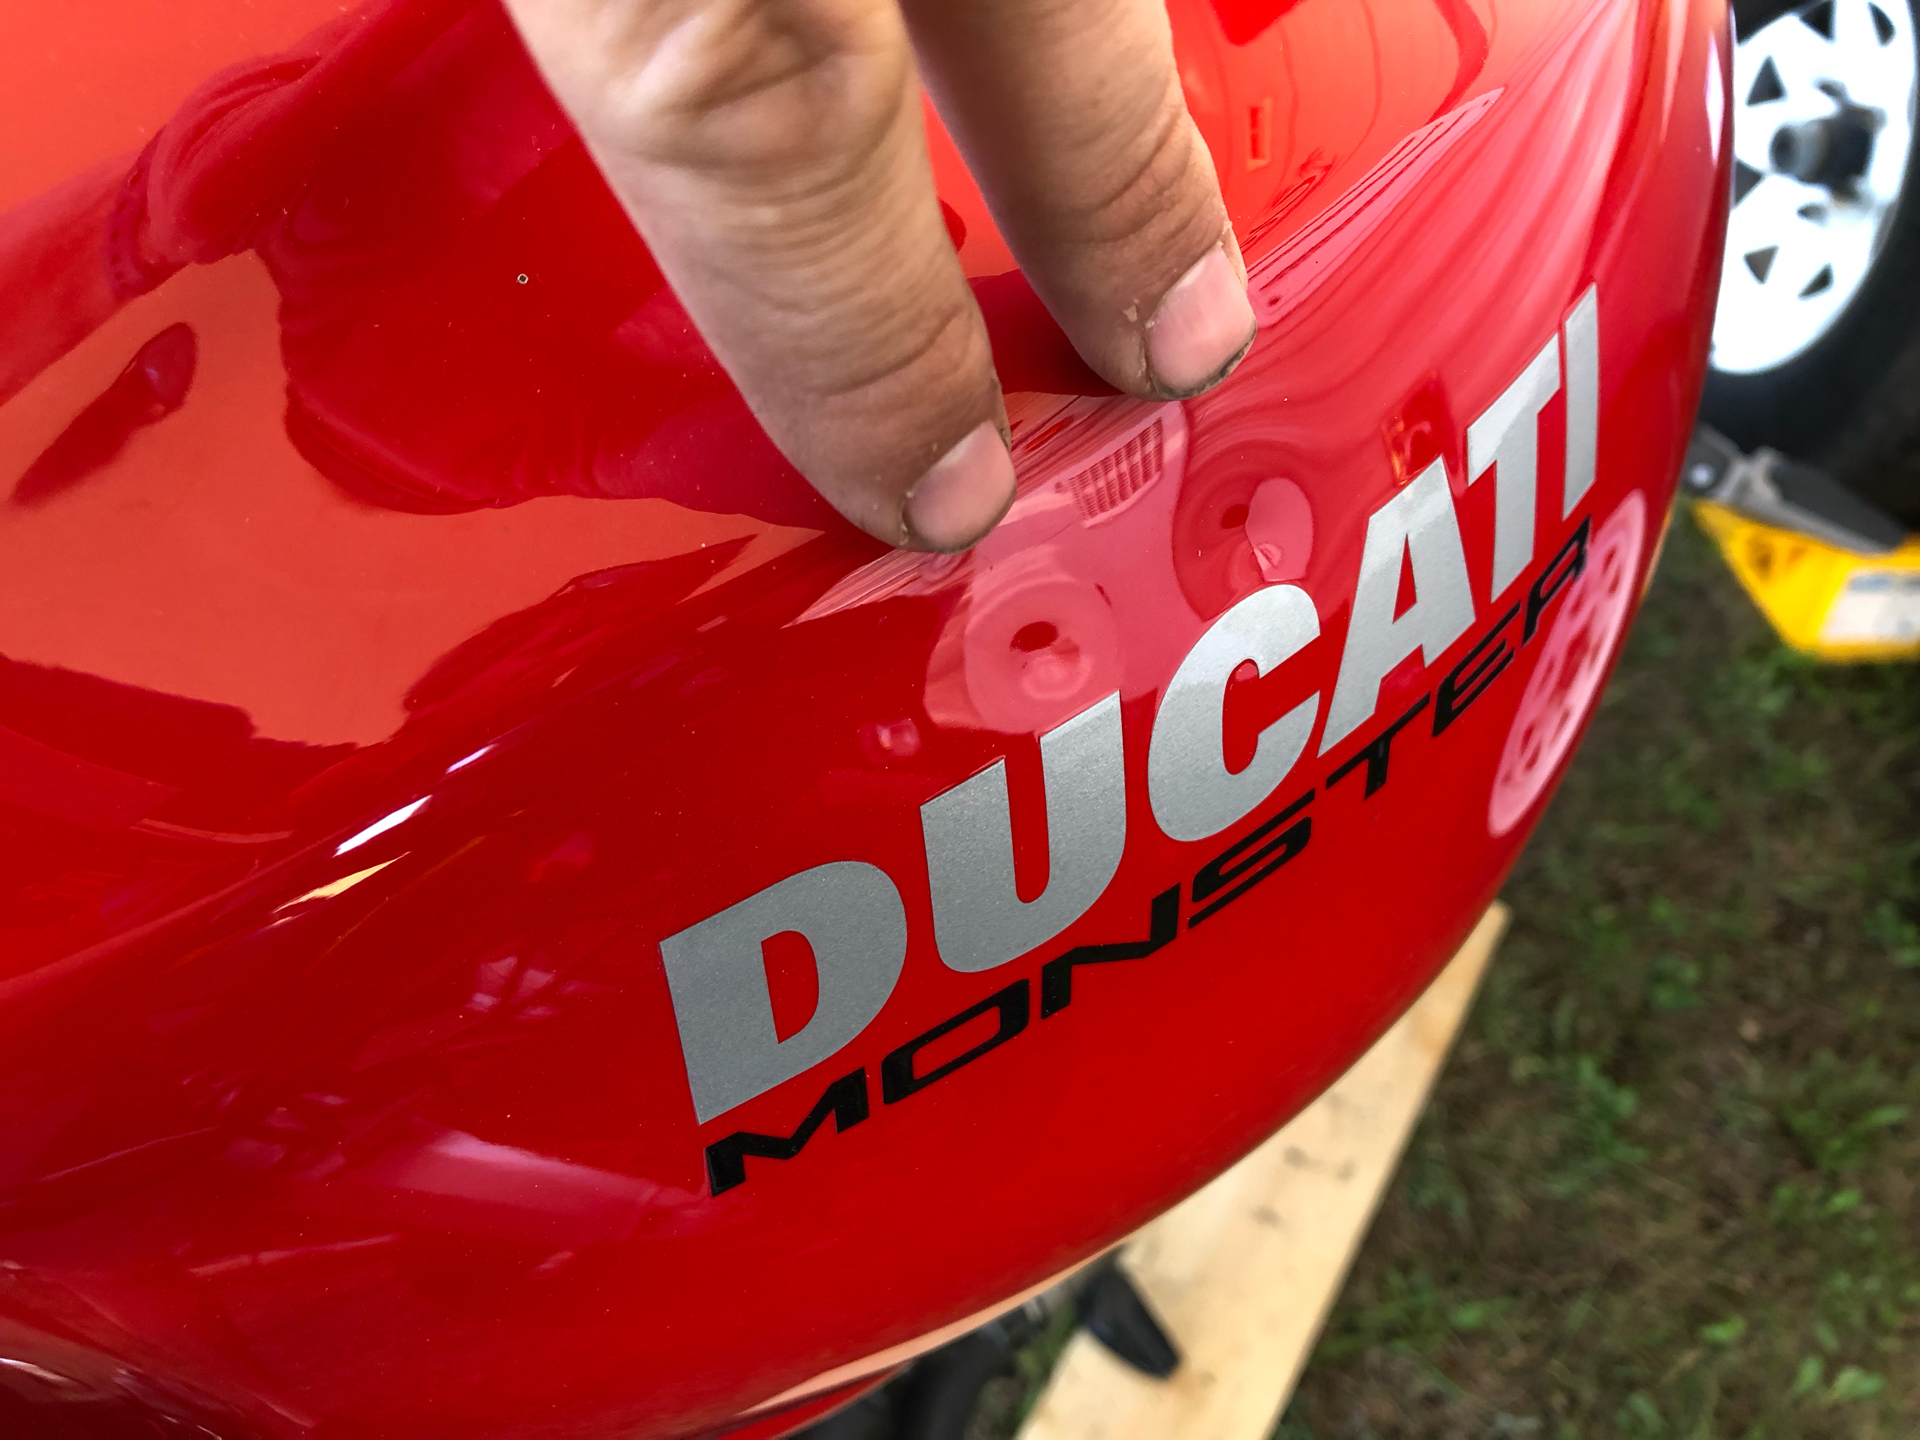 2018 Ducati Monster 1200 S in Escanaba, Michigan - Photo 6